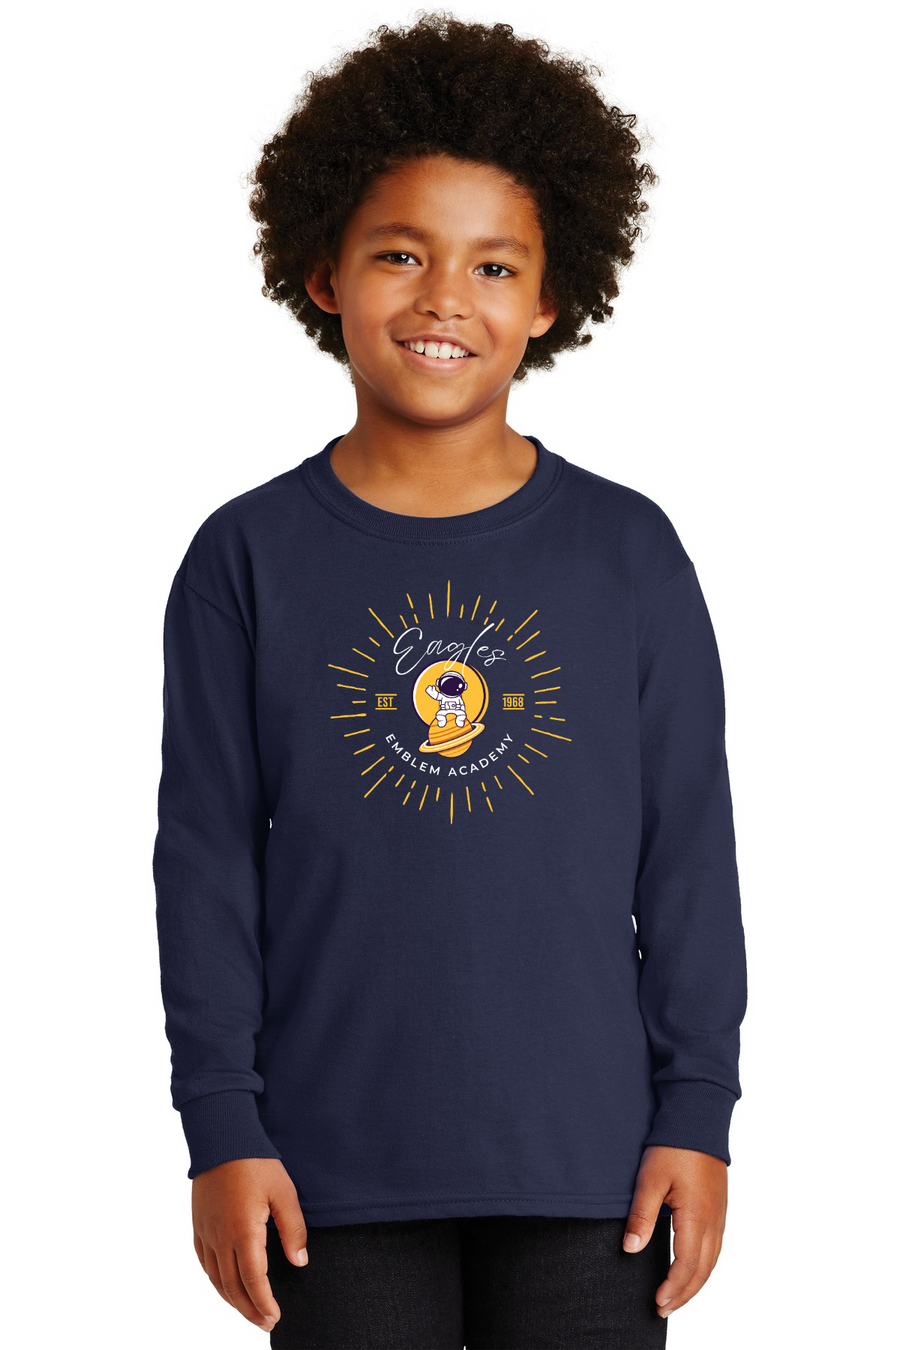 Emblem Academy Spirit Wear 2023/24 On-Demand-Unisex Long Sleeve Shirt Astronaut Logo